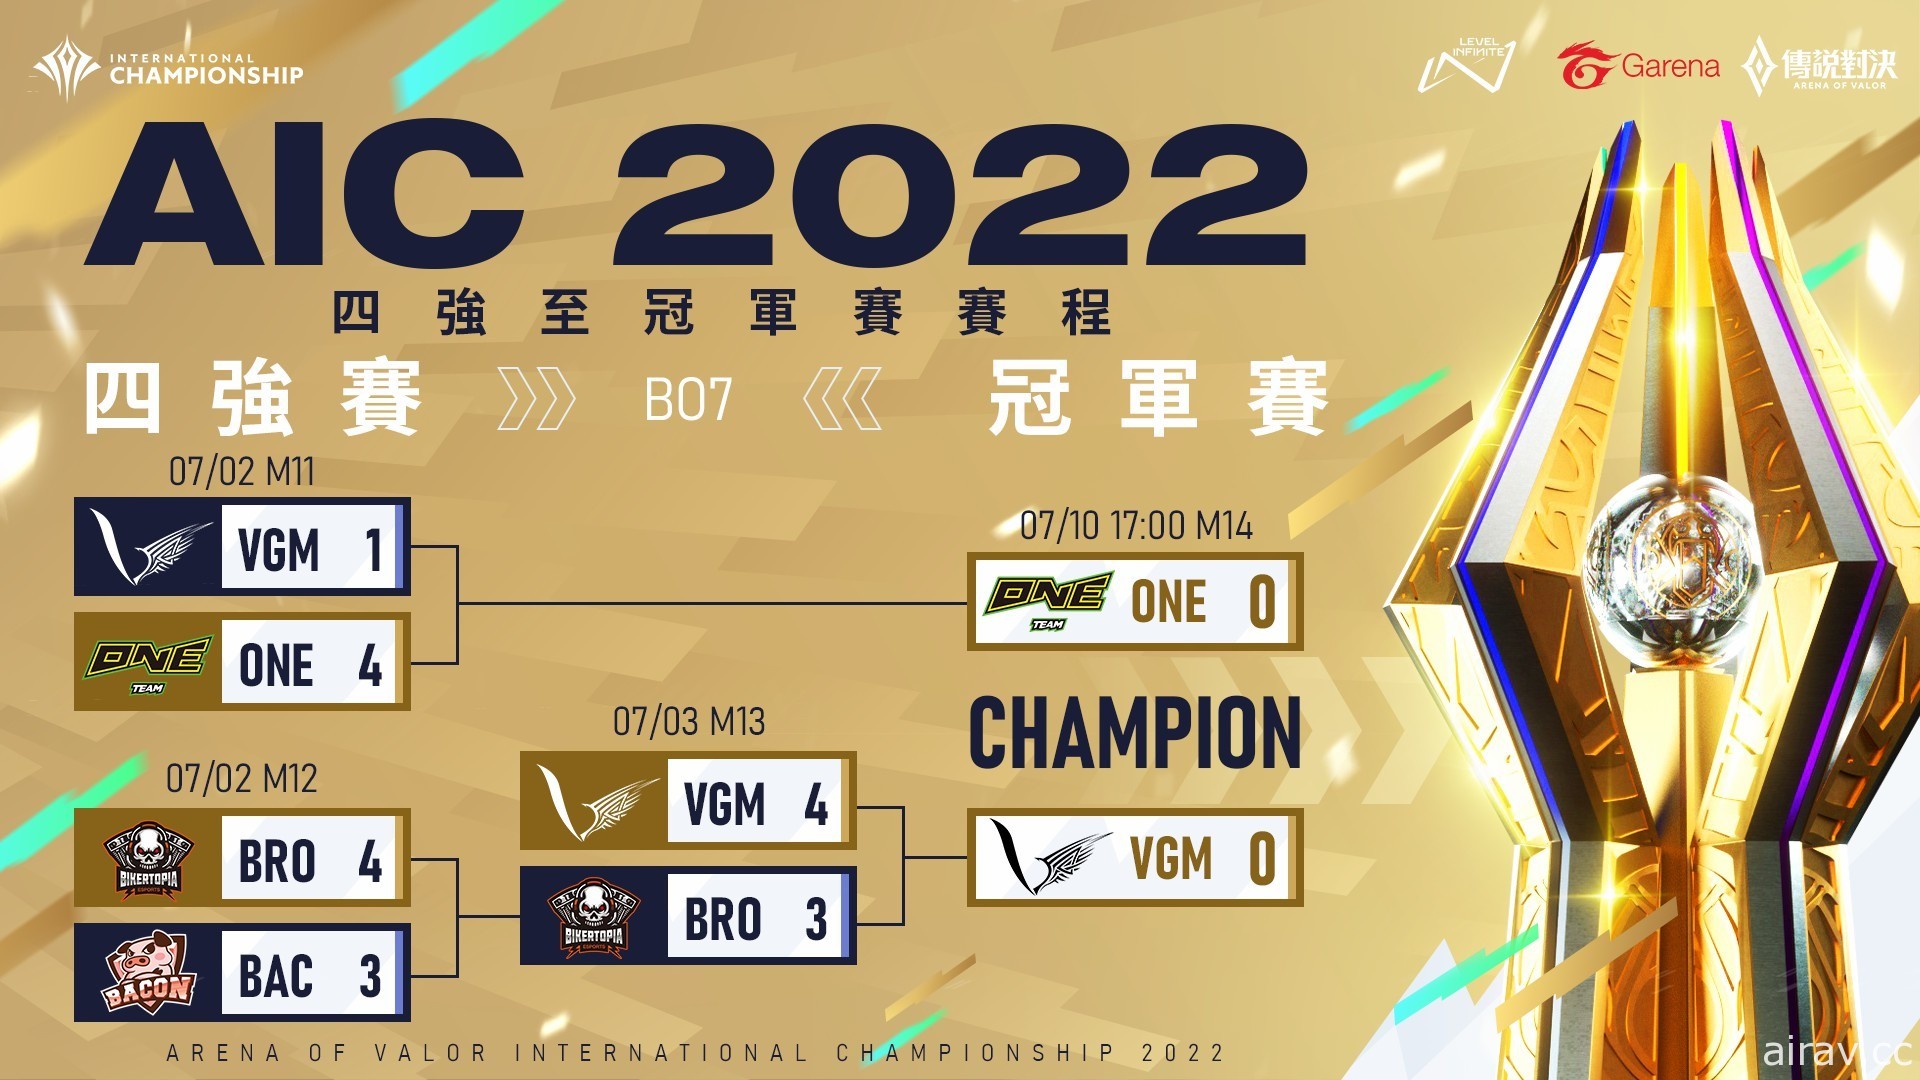 《傳說對決》AIC 2022 總冠軍賽 7 月 10 日開打